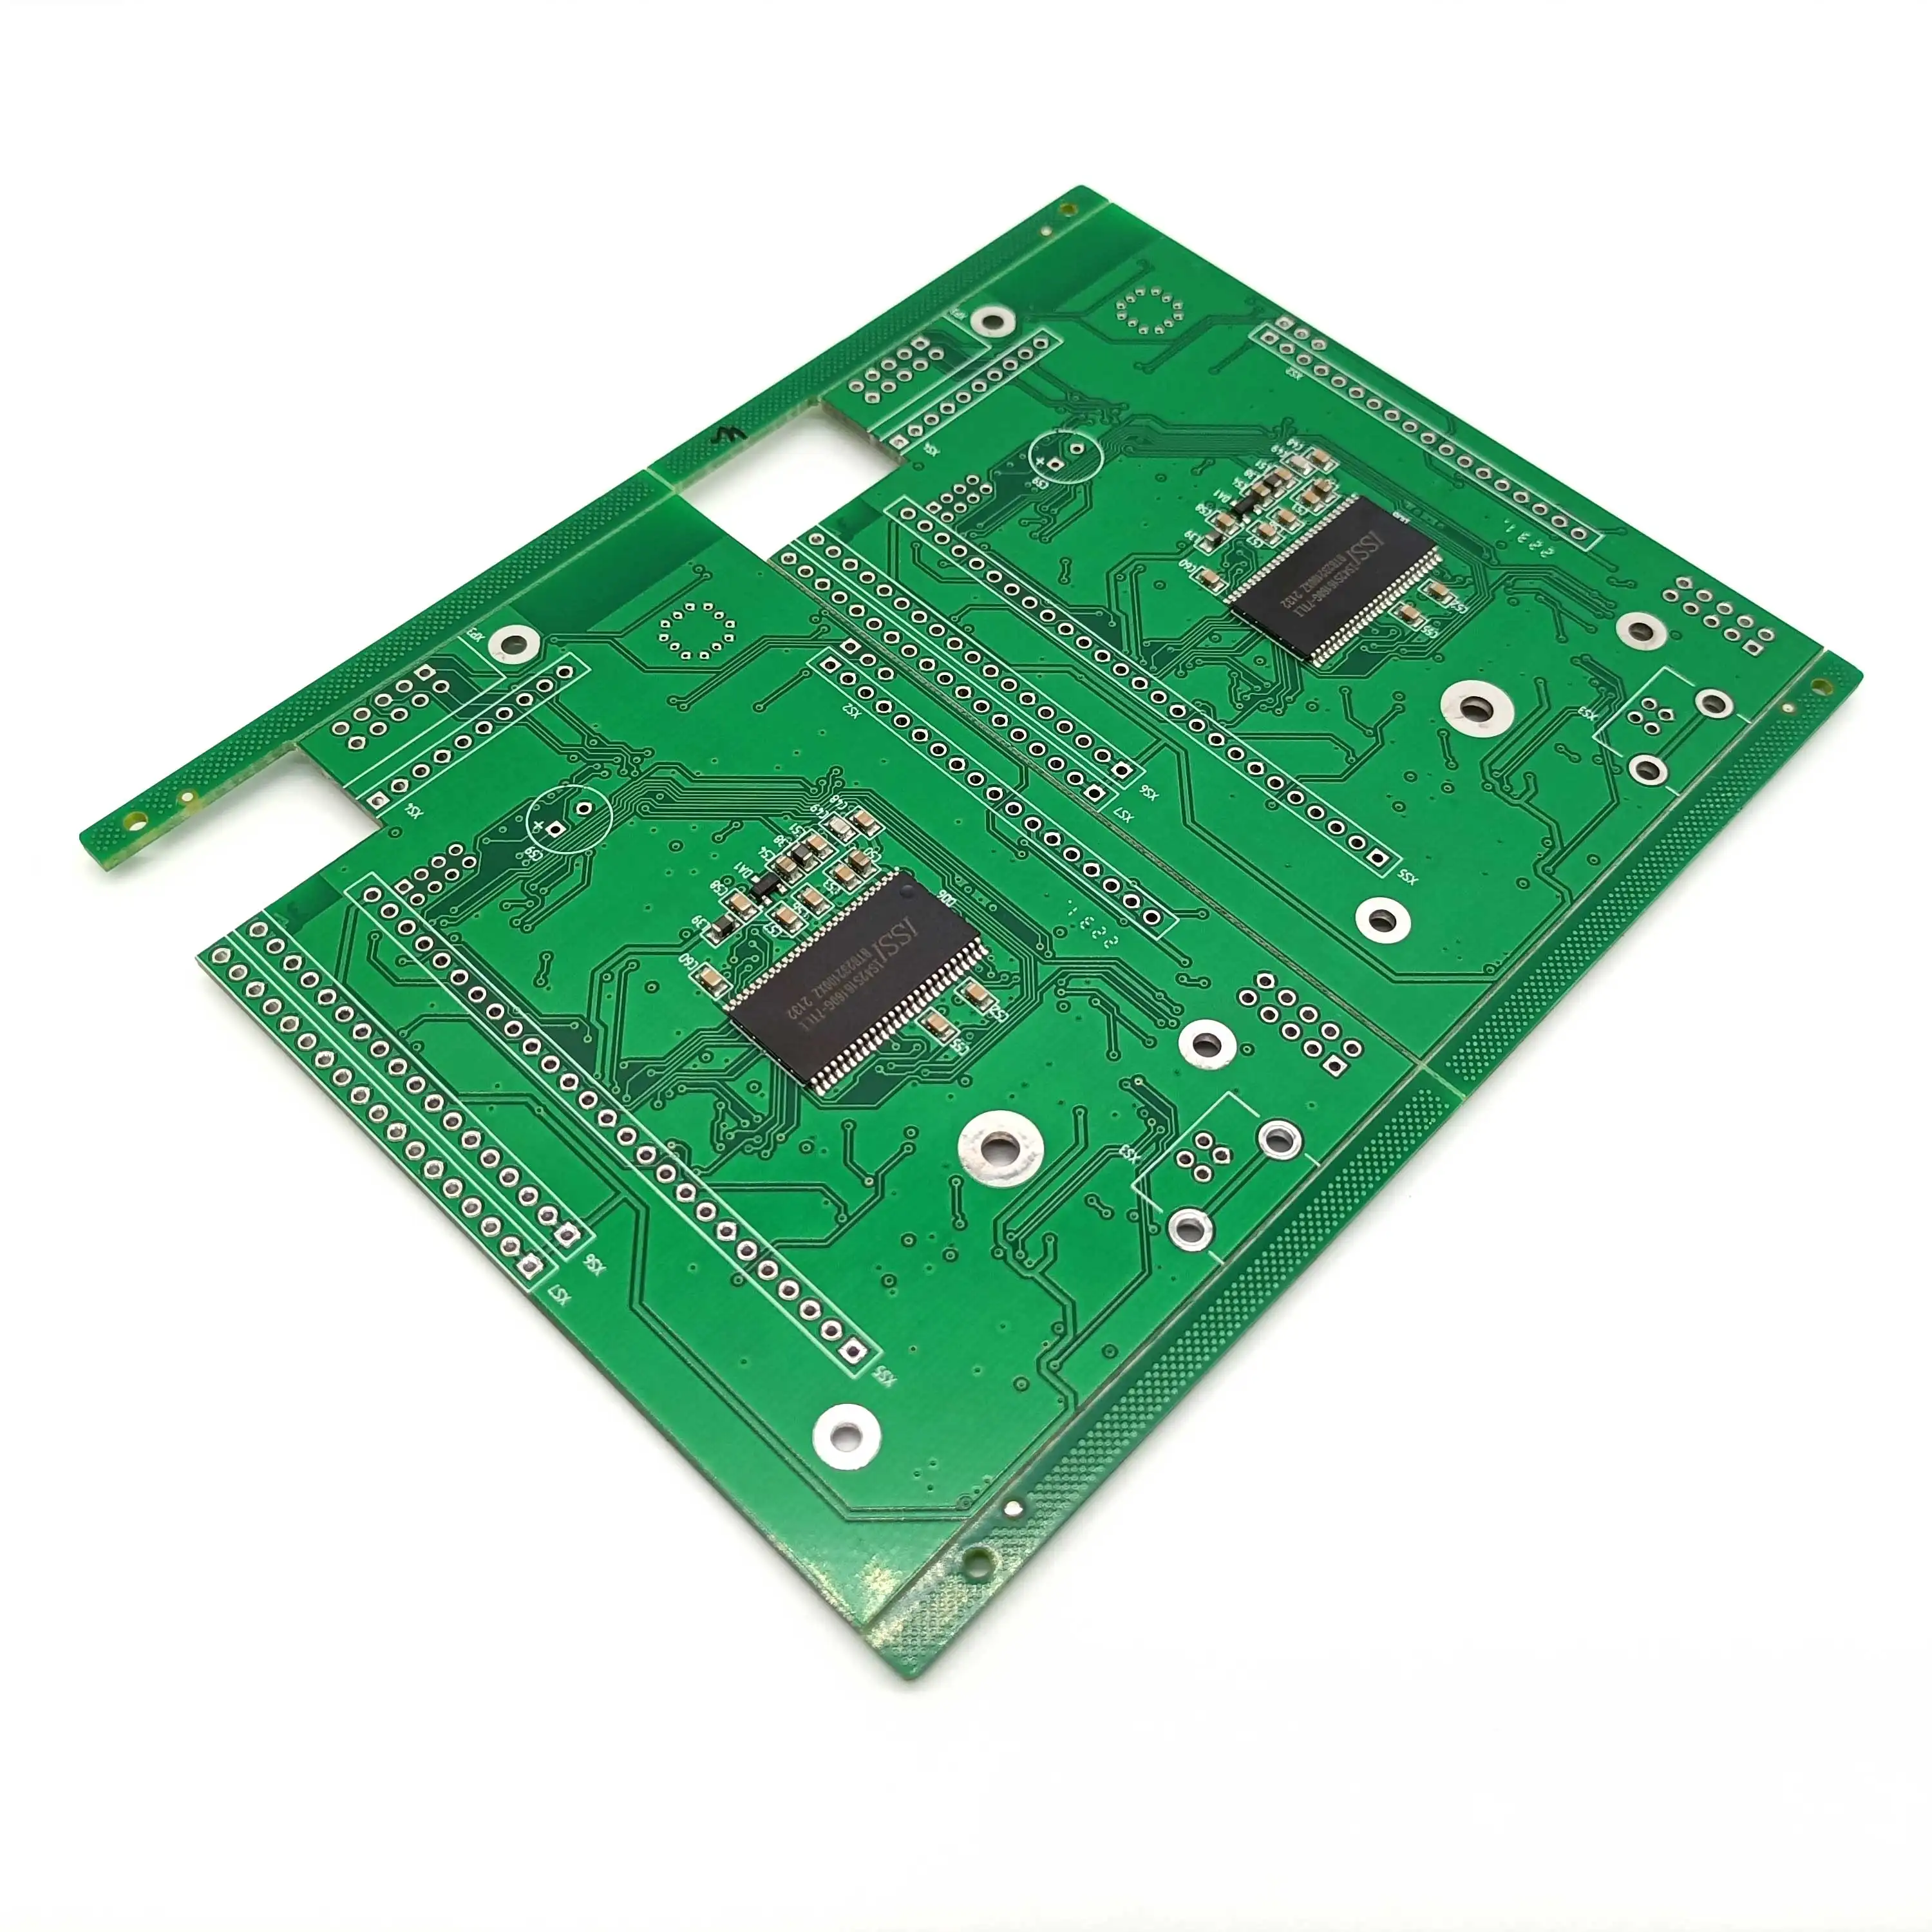 Fabricant d'assemblage de circuits imprimés d'appareils domestiques intelligents-RF IoT PCBA appareils électroménagers IOT appareils numériques marché russe